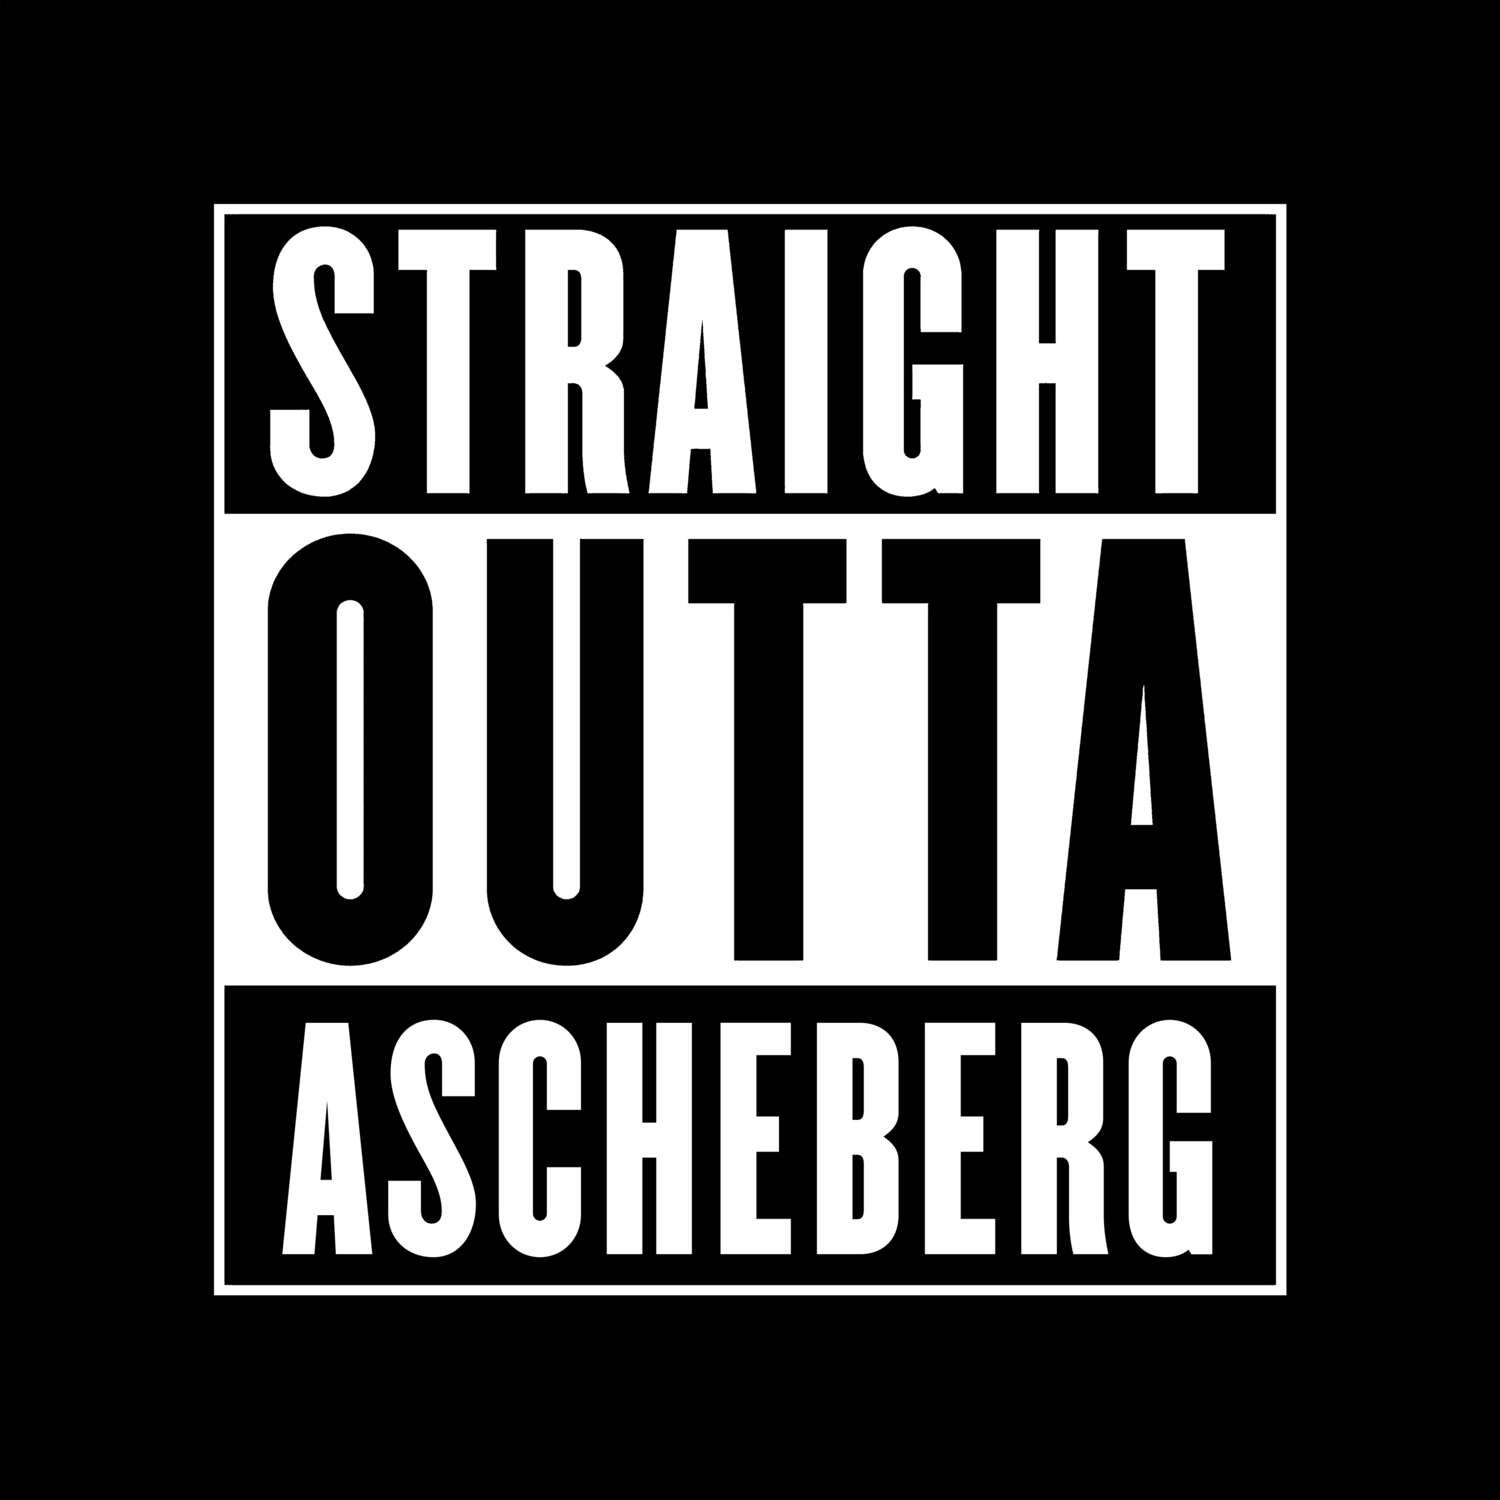 Ascheberg T-Shirt »Straight Outta«